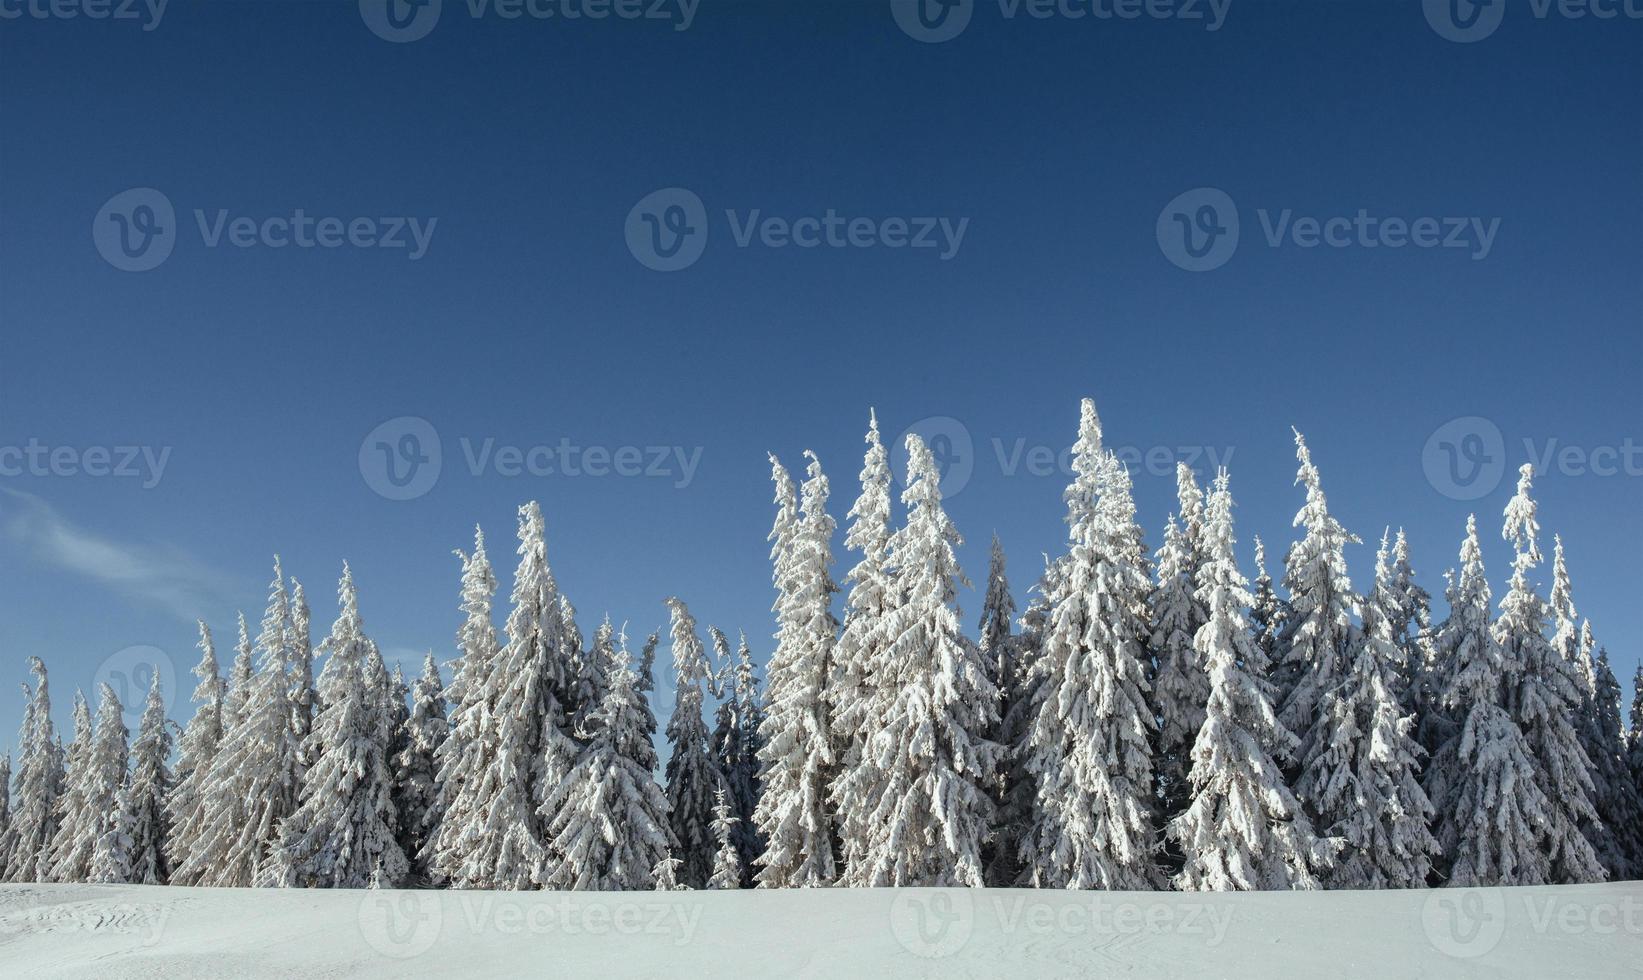 geheimnisvolle winterlandschaft majestätische berge foto